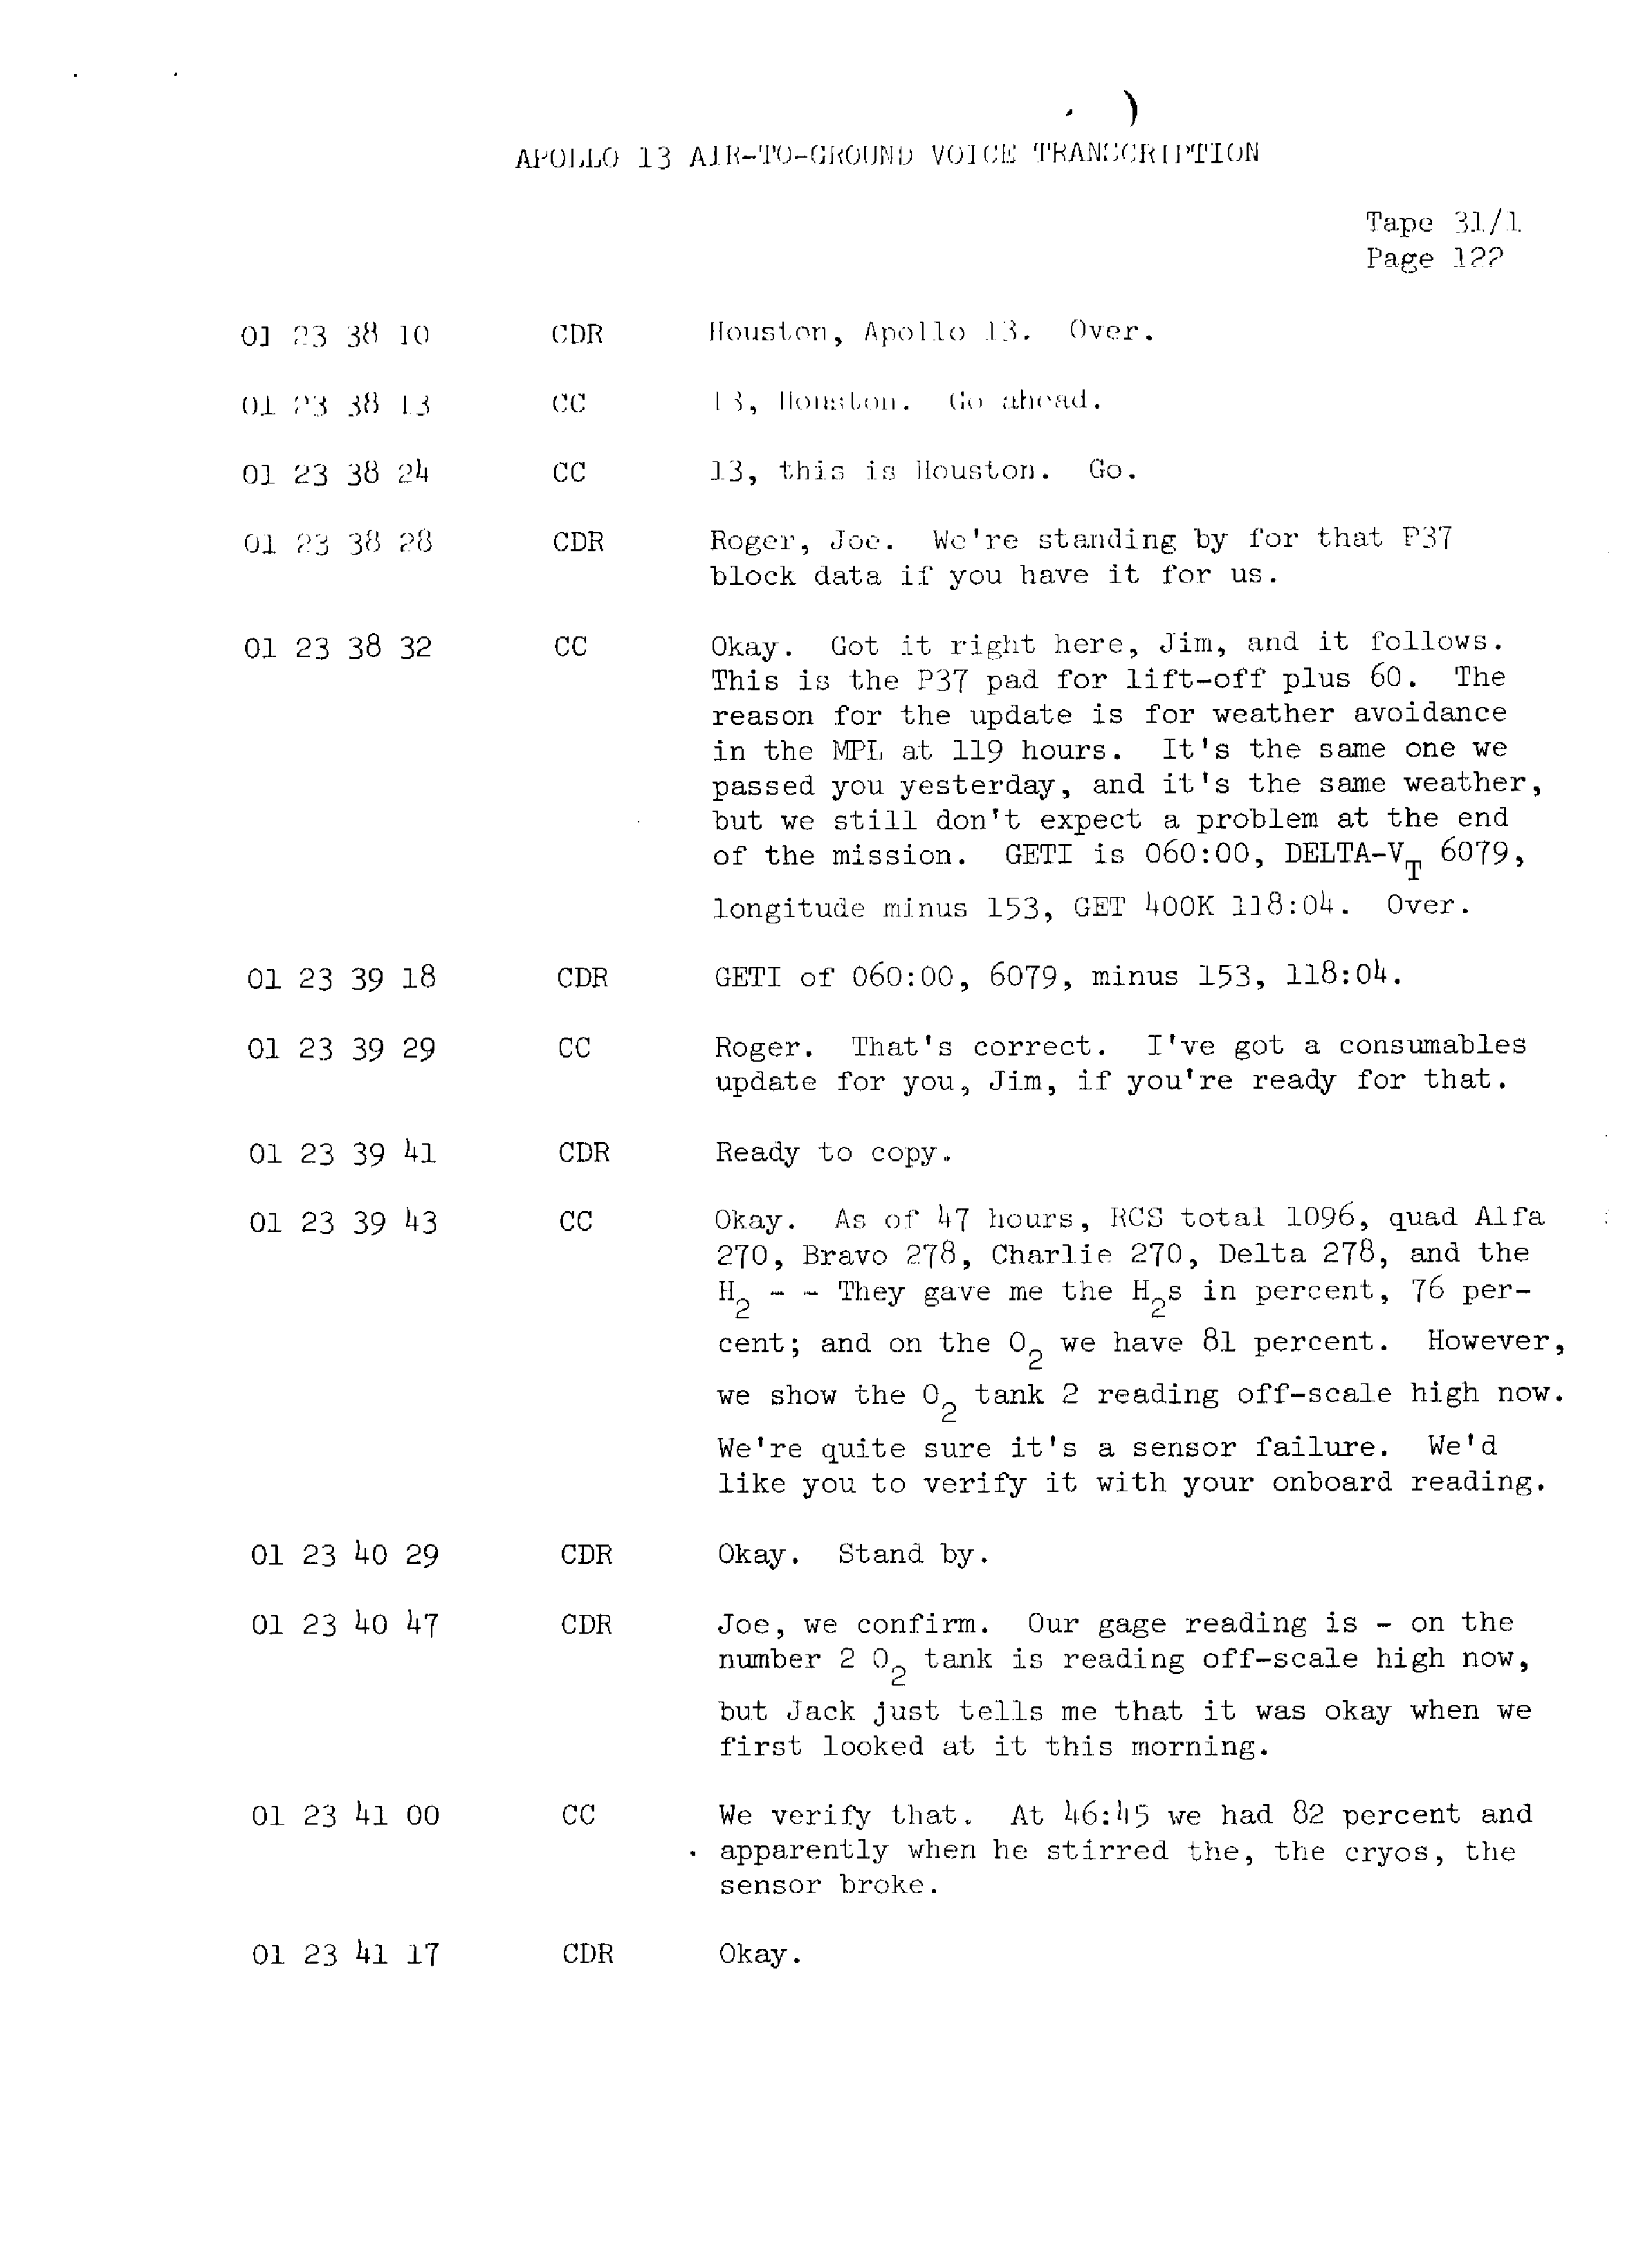 Page 129 of Apollo 13’s original transcript